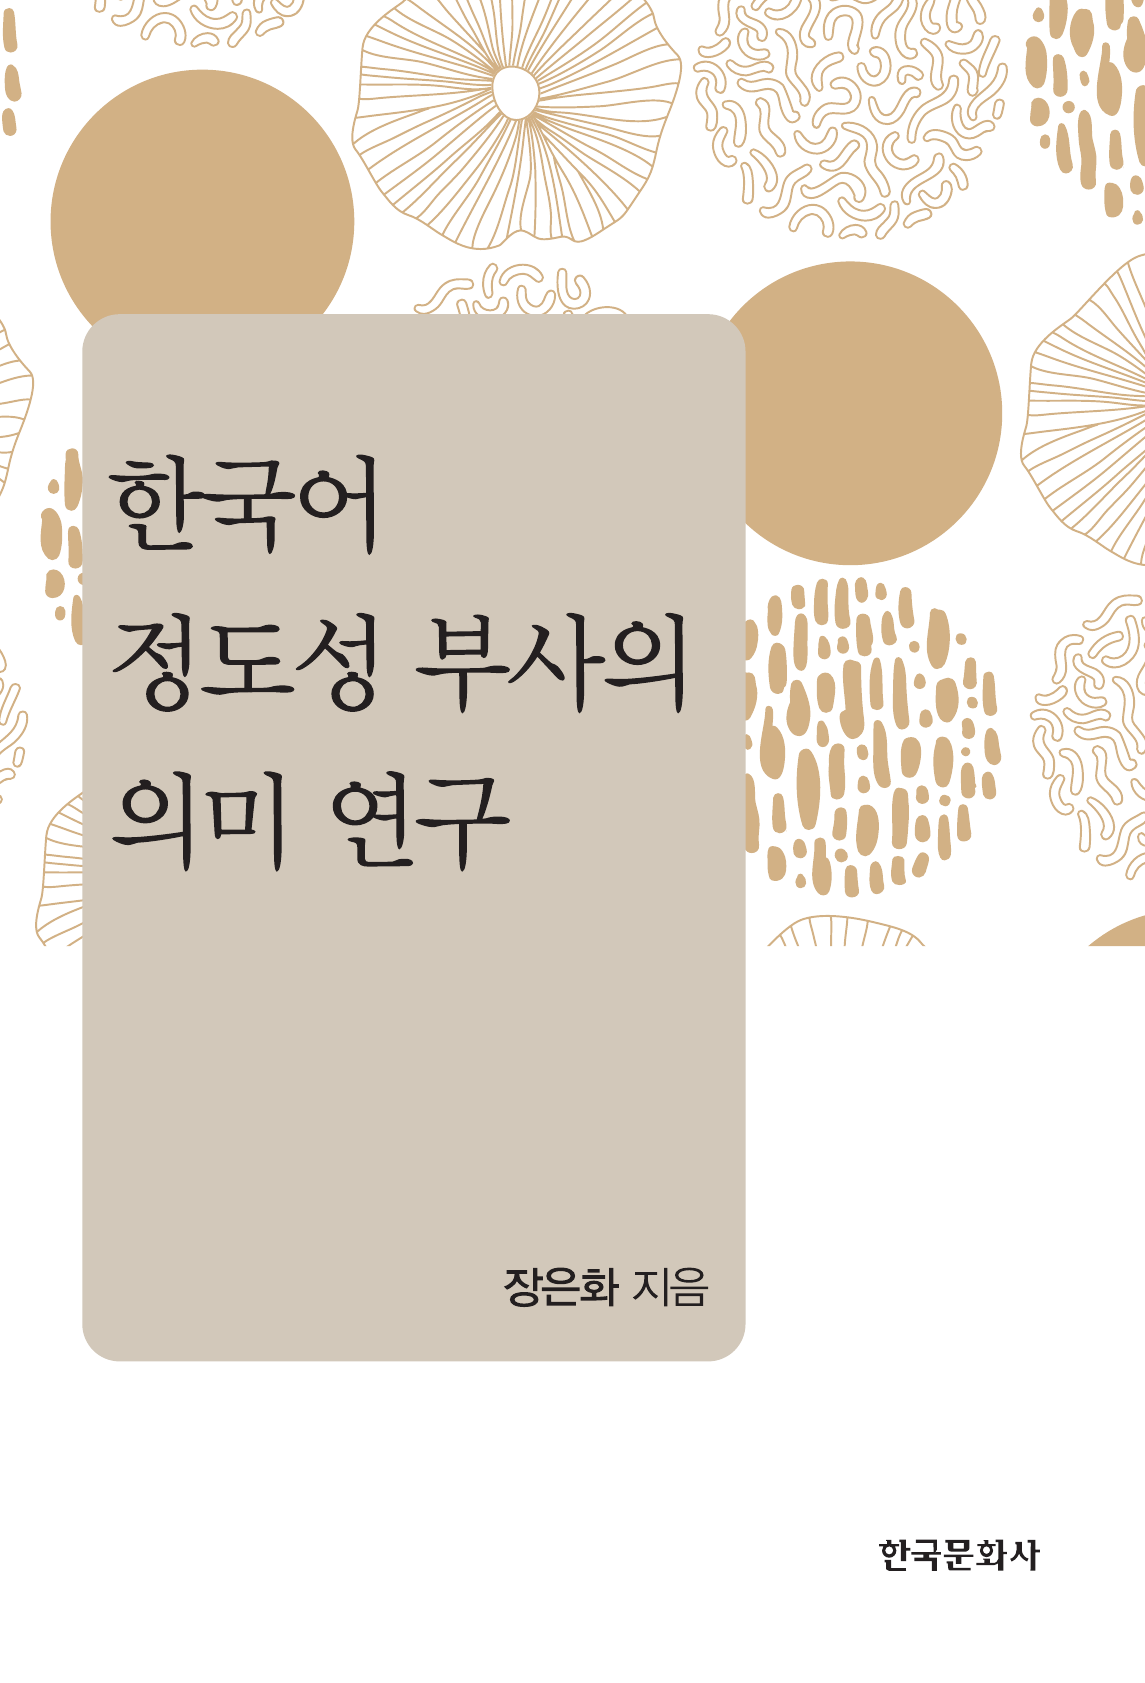 한국어 정도성 부사의 의미 연구